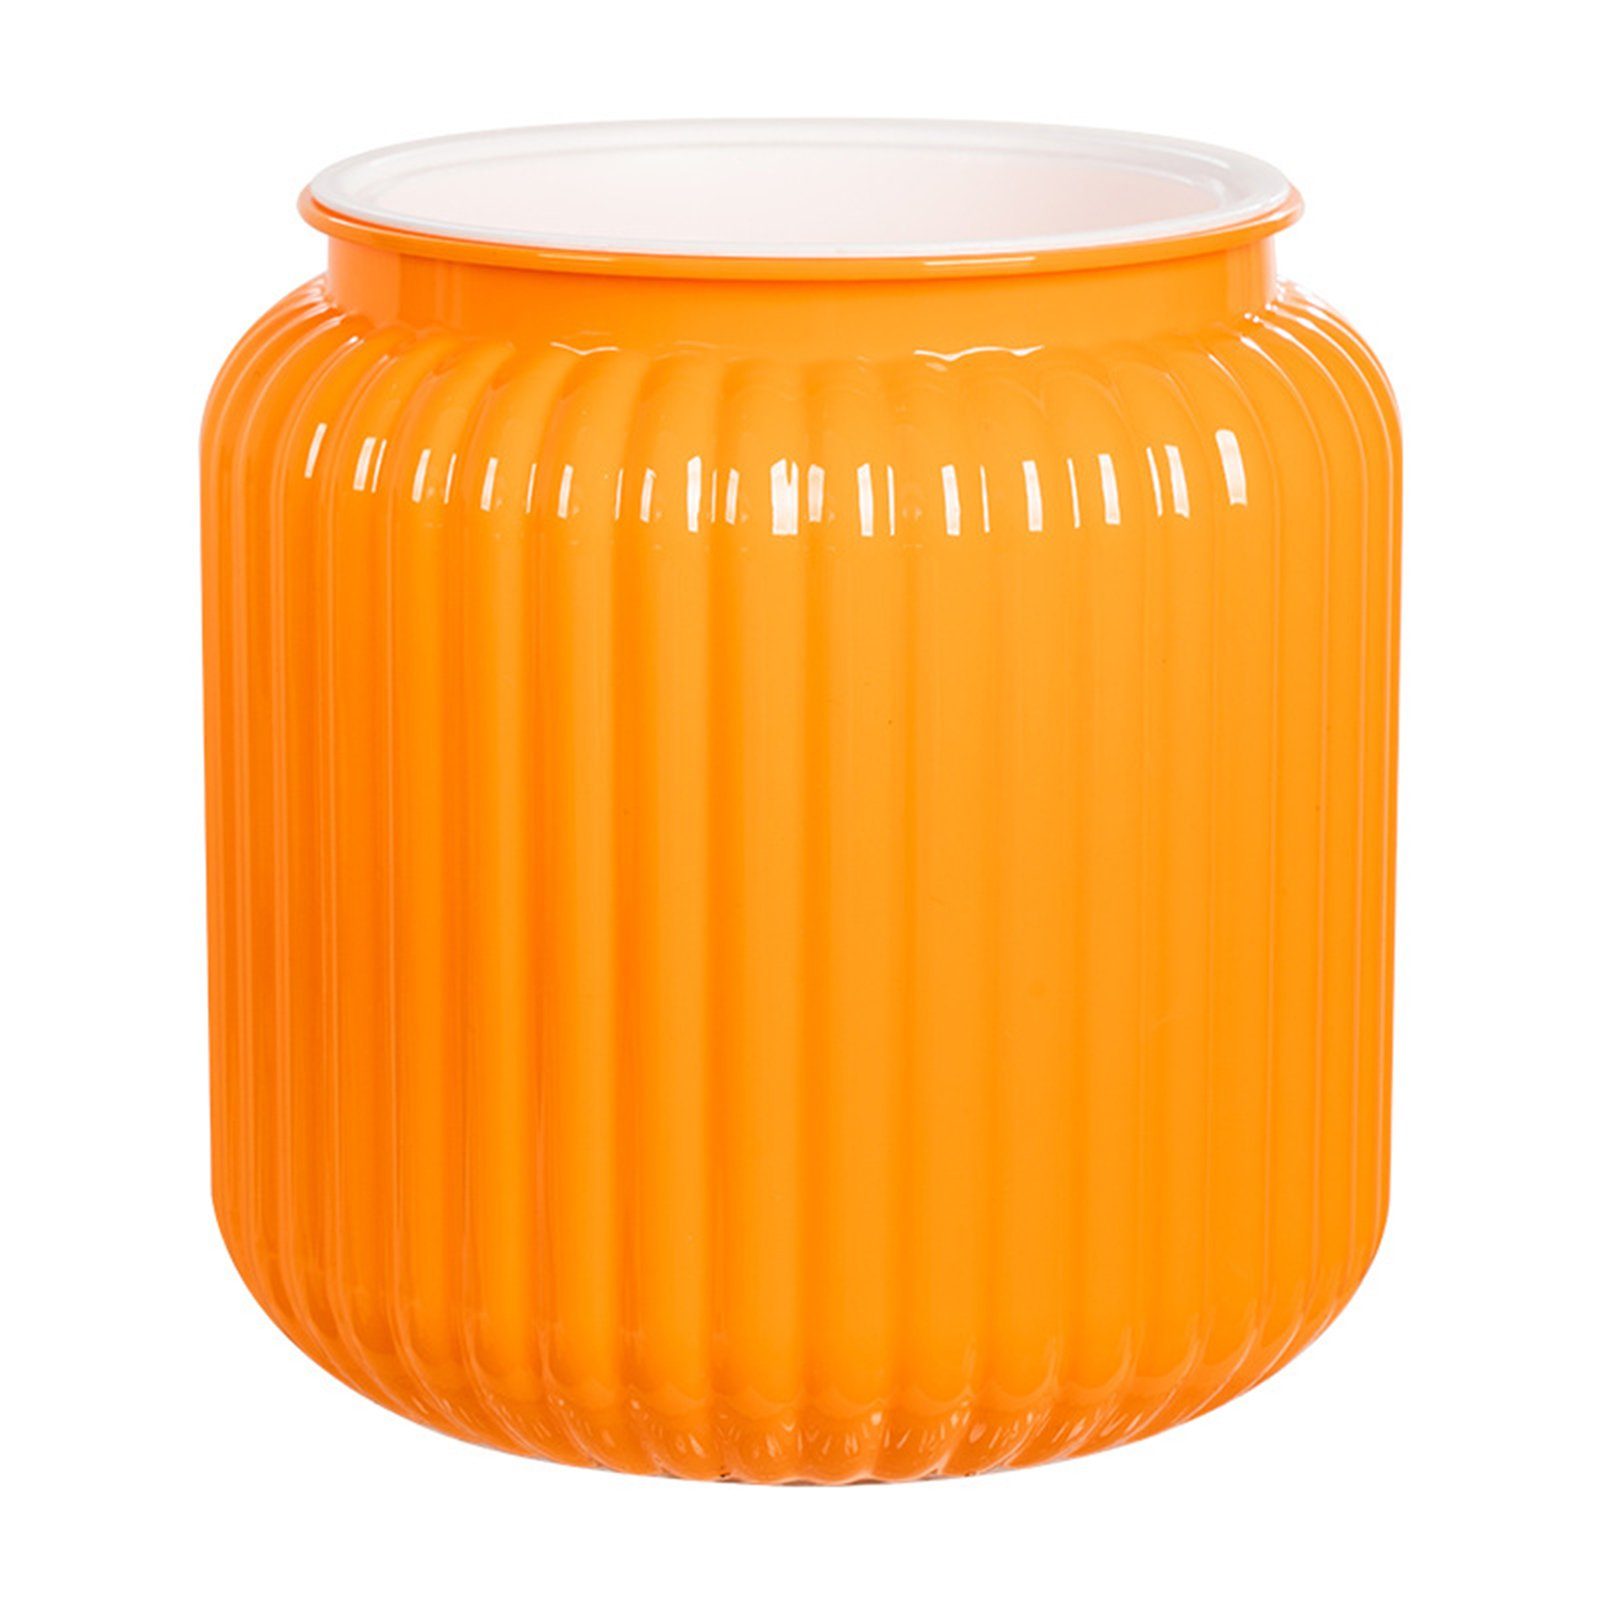 Blusmart Blumentopf Kunststoff-Blumentopf Mit Großem Flaschenmunddurchmesser orange